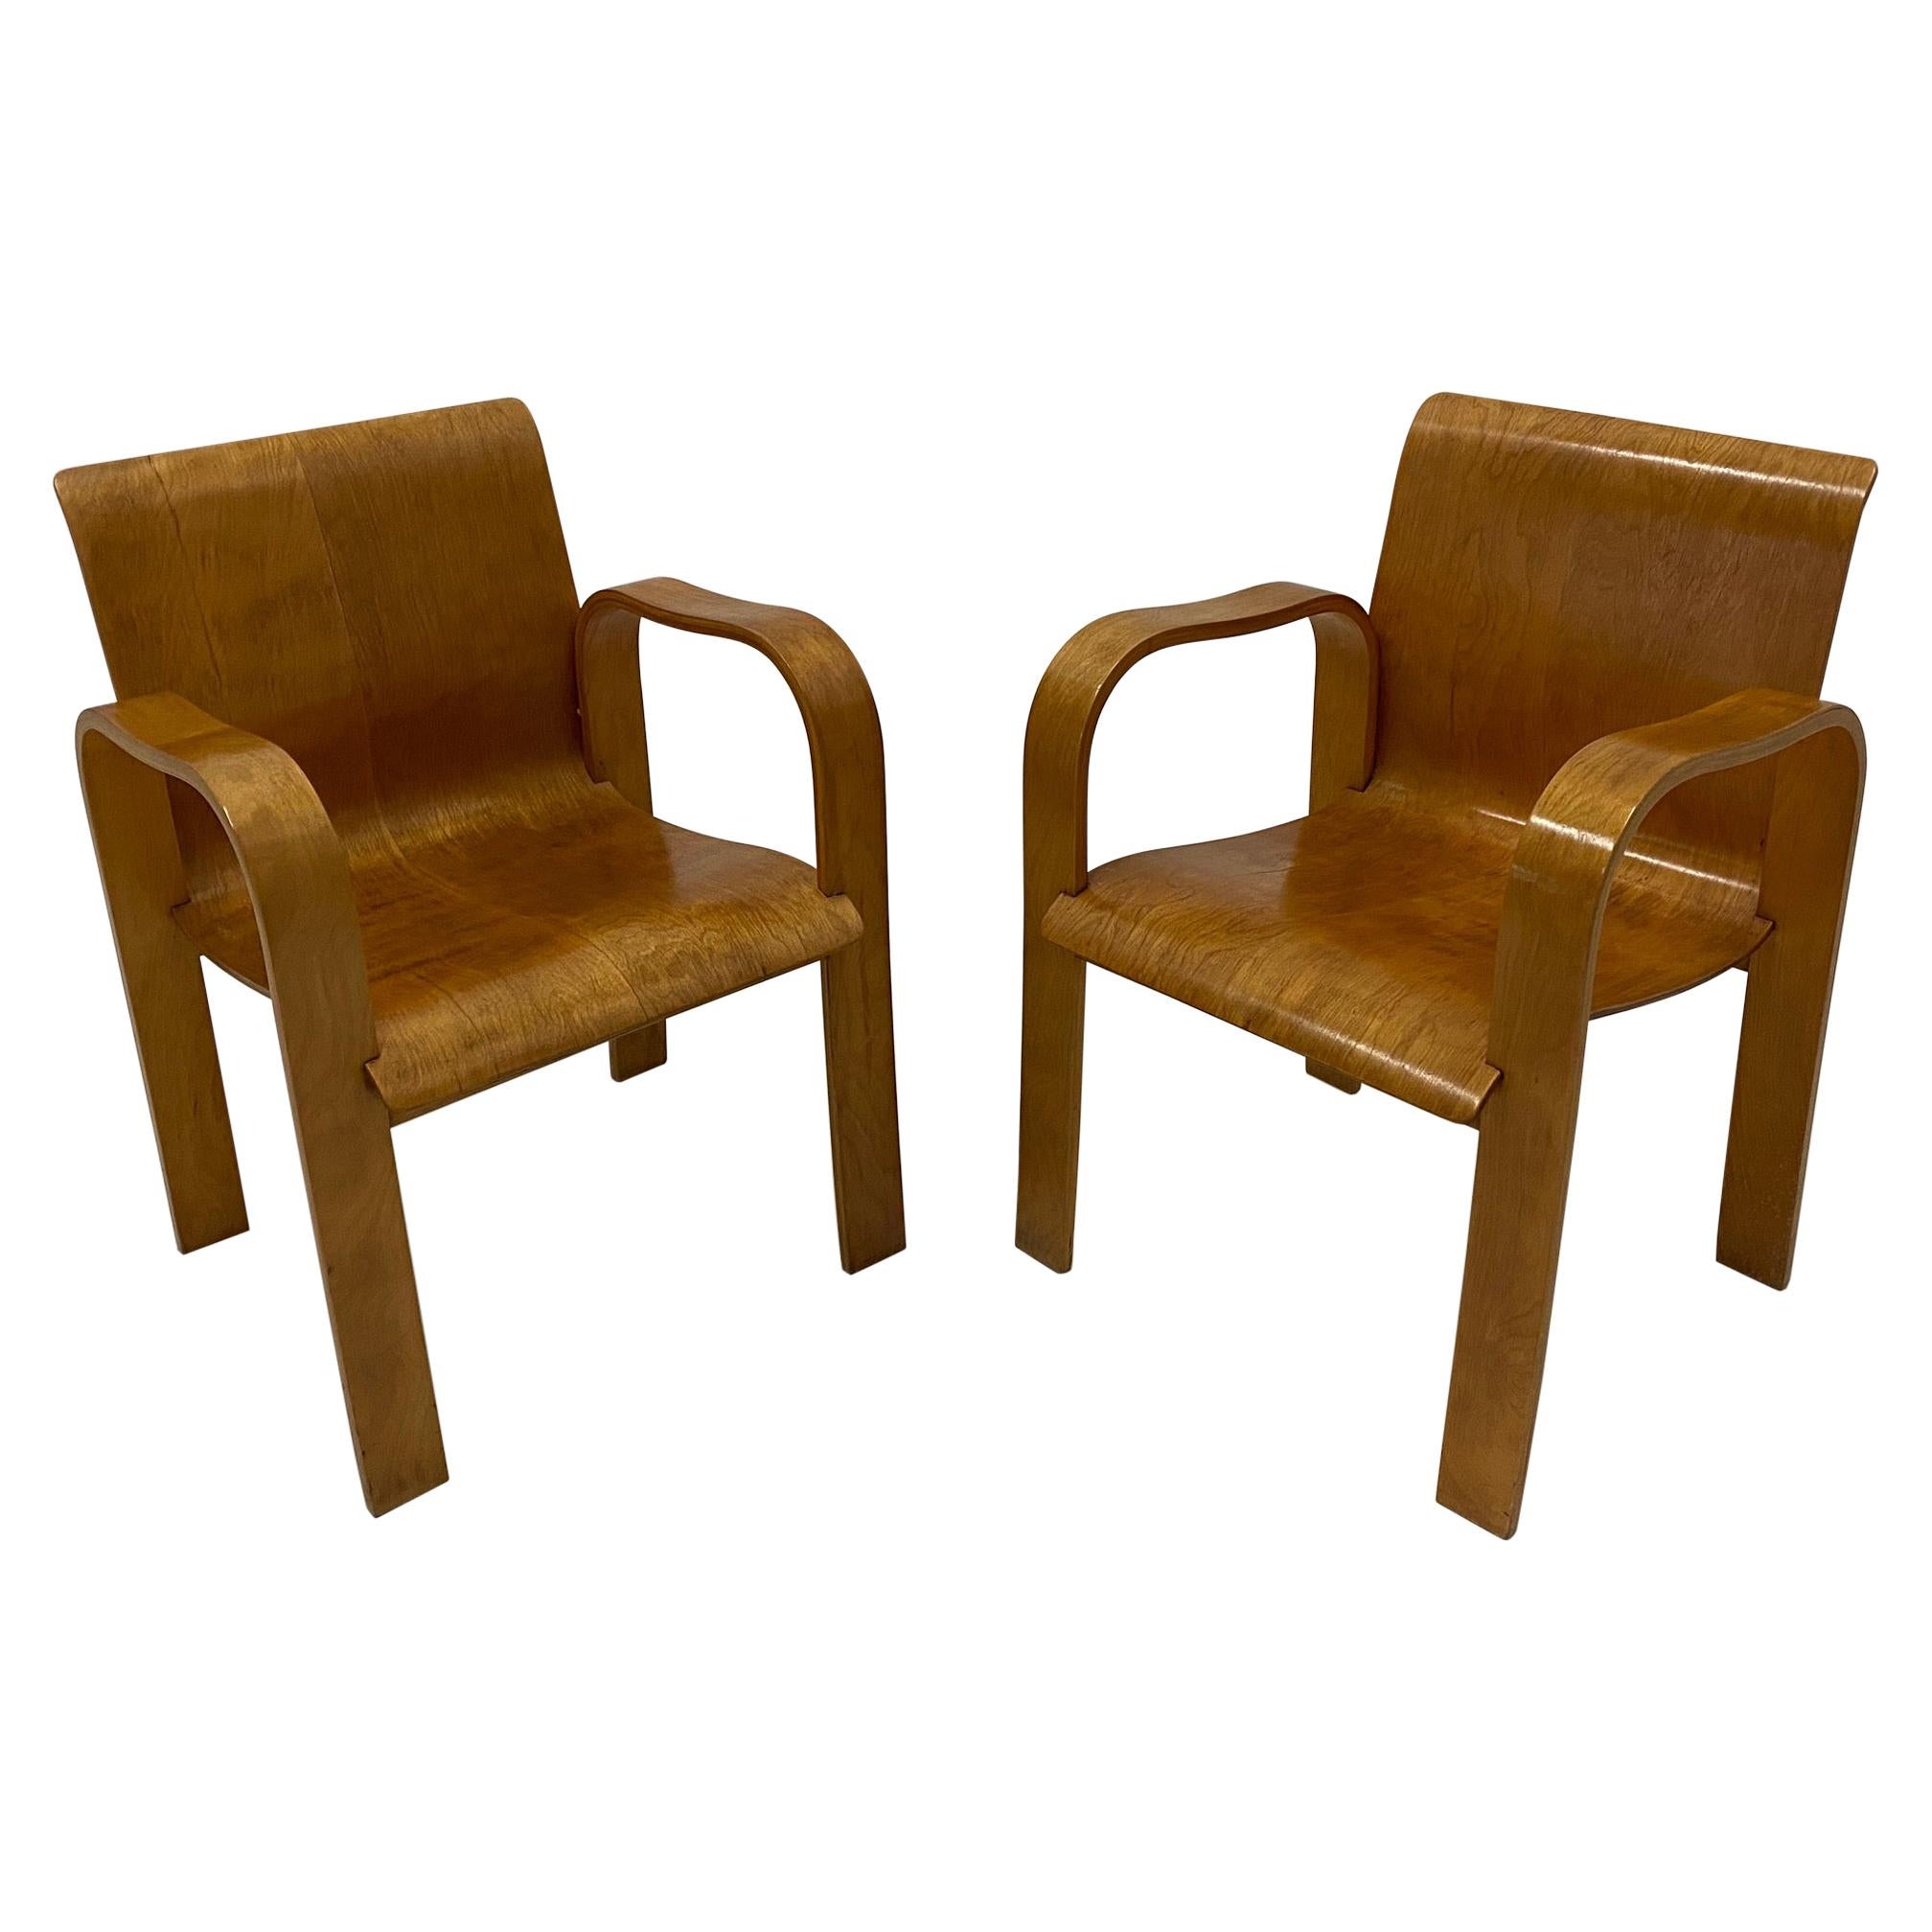 Rare paire de fauteuils en contreplaqué moulé de style moderne du milieu du siècle dernier